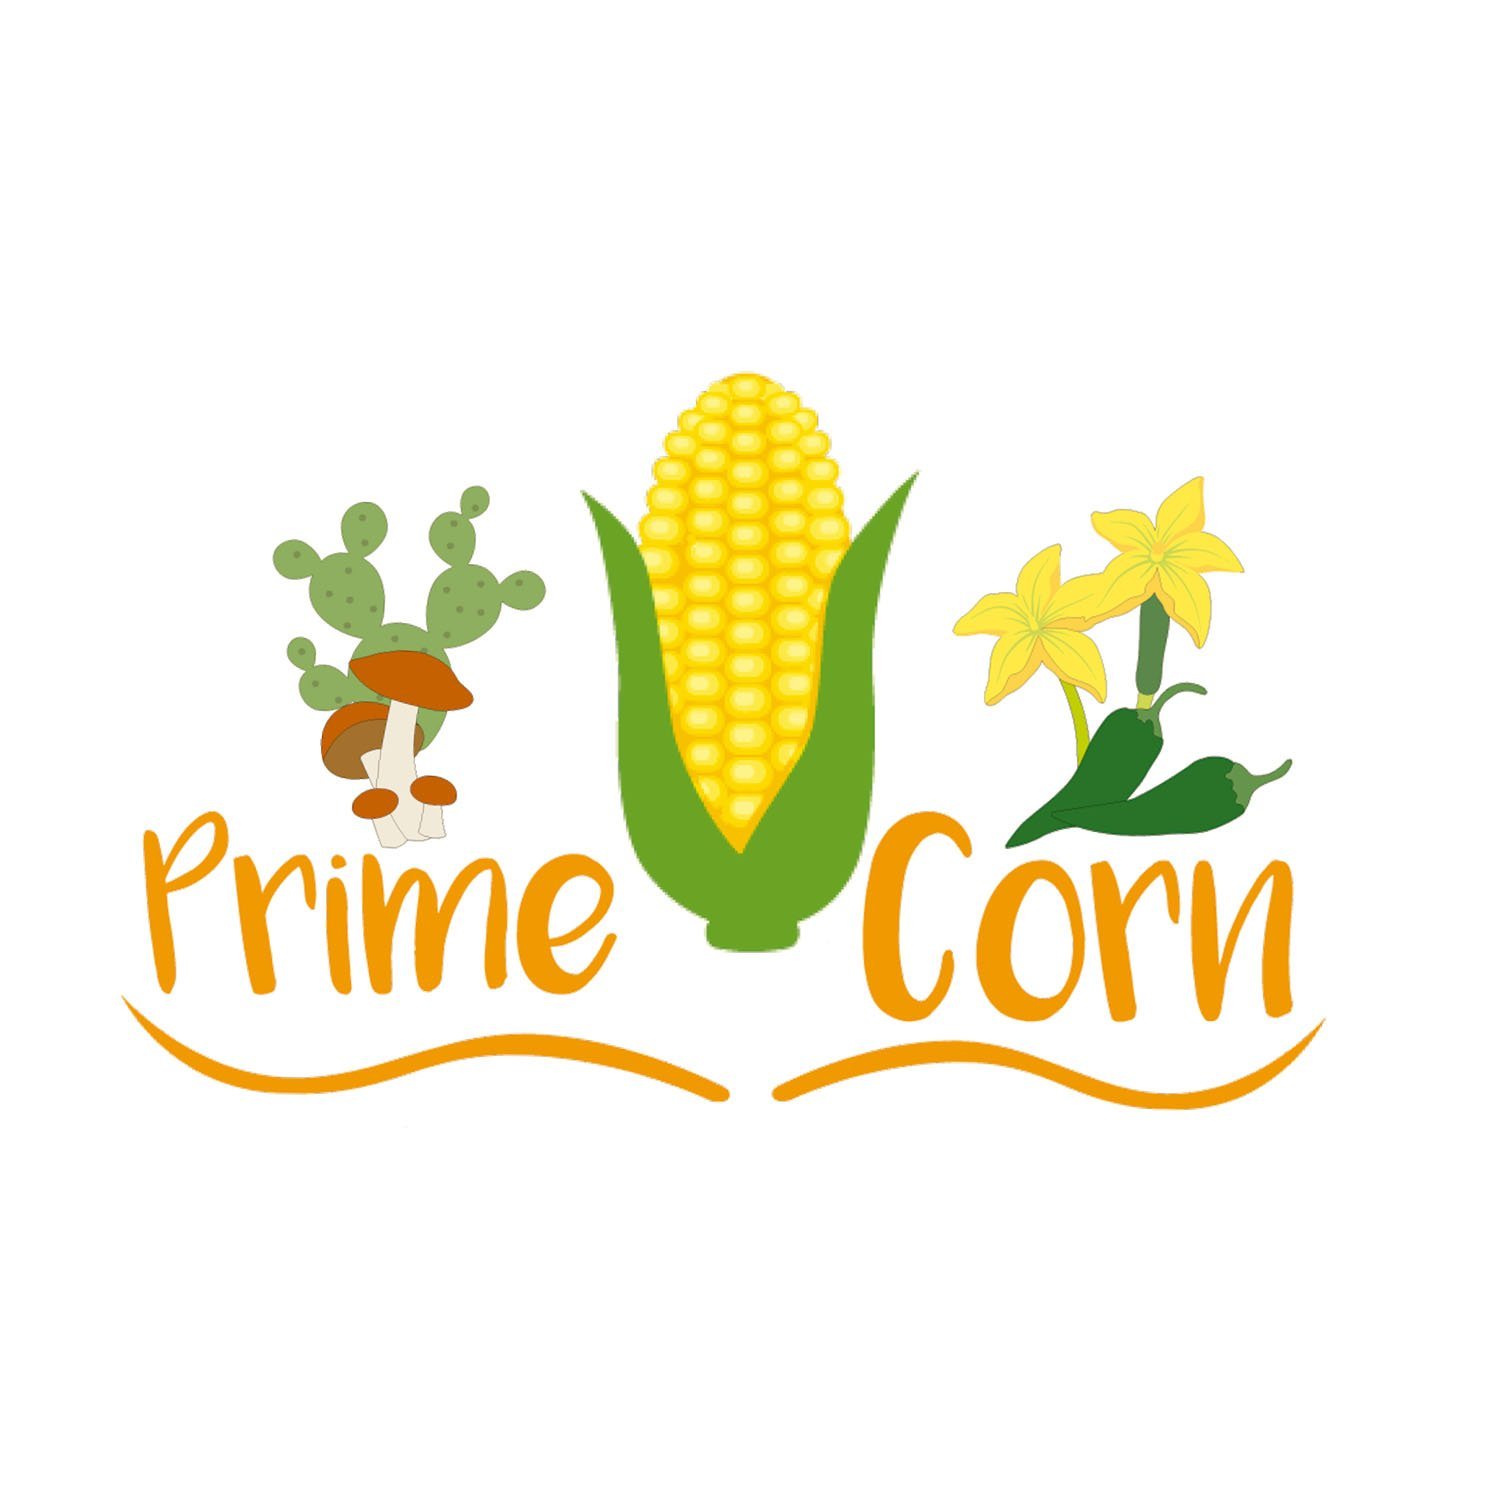 Prime Corn - logo new-Full Logo-1500x1500px.jpg